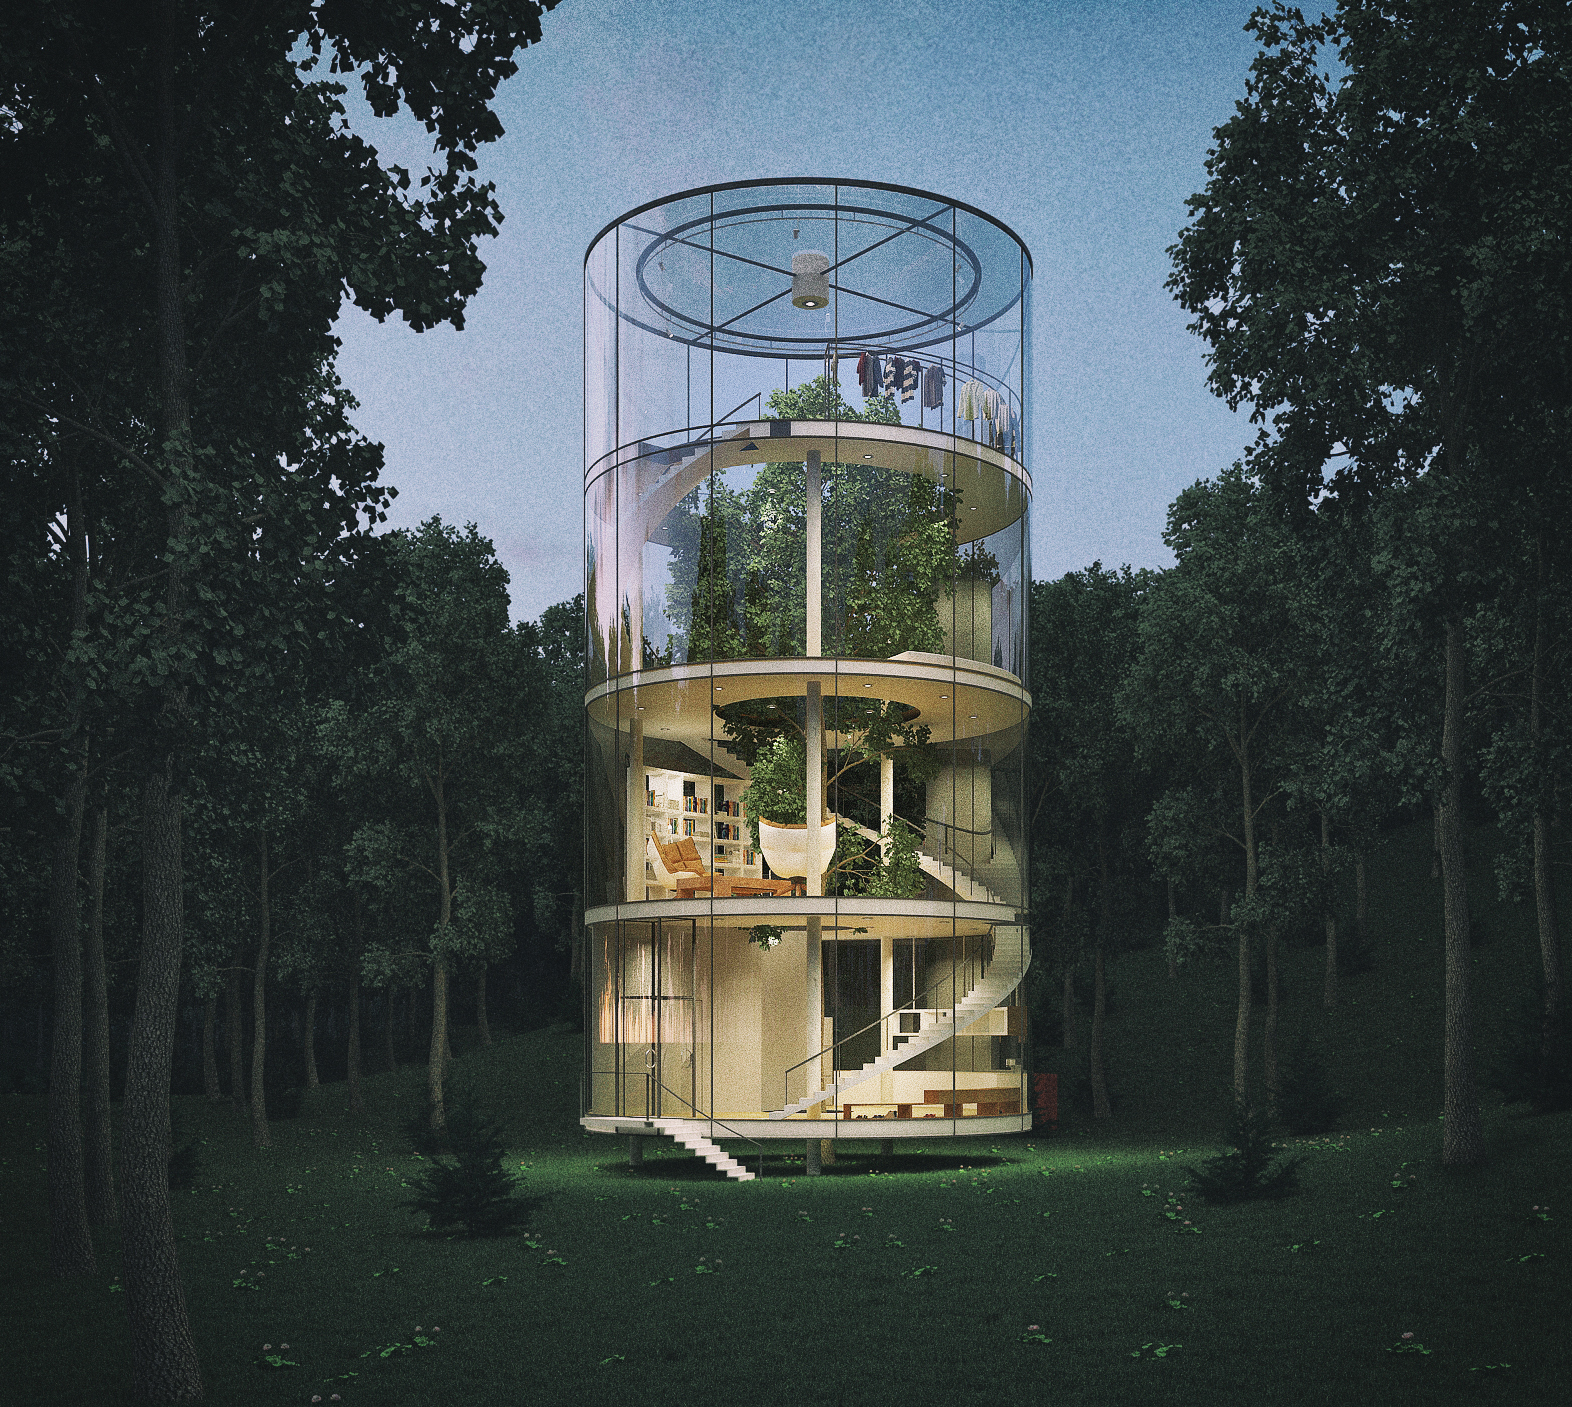 Una casa del árbol - Noticias de Arquitectura - Buscador de Arquitectura